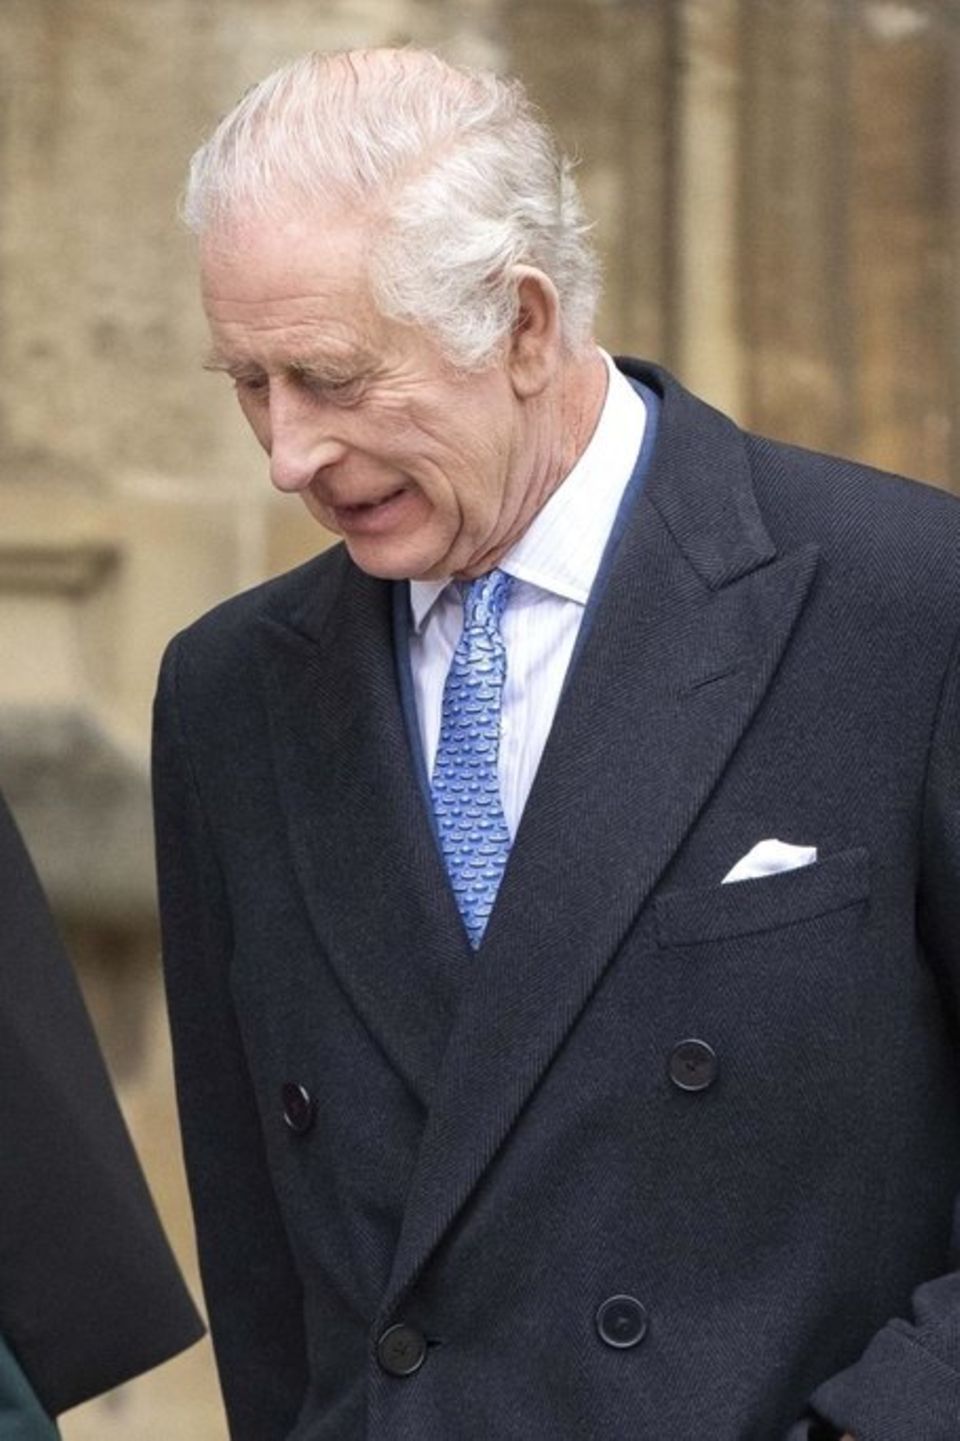 Königin Camilla und König Charles III. ehren die verstorbene Queen an ihrem 98. Geburtstag.